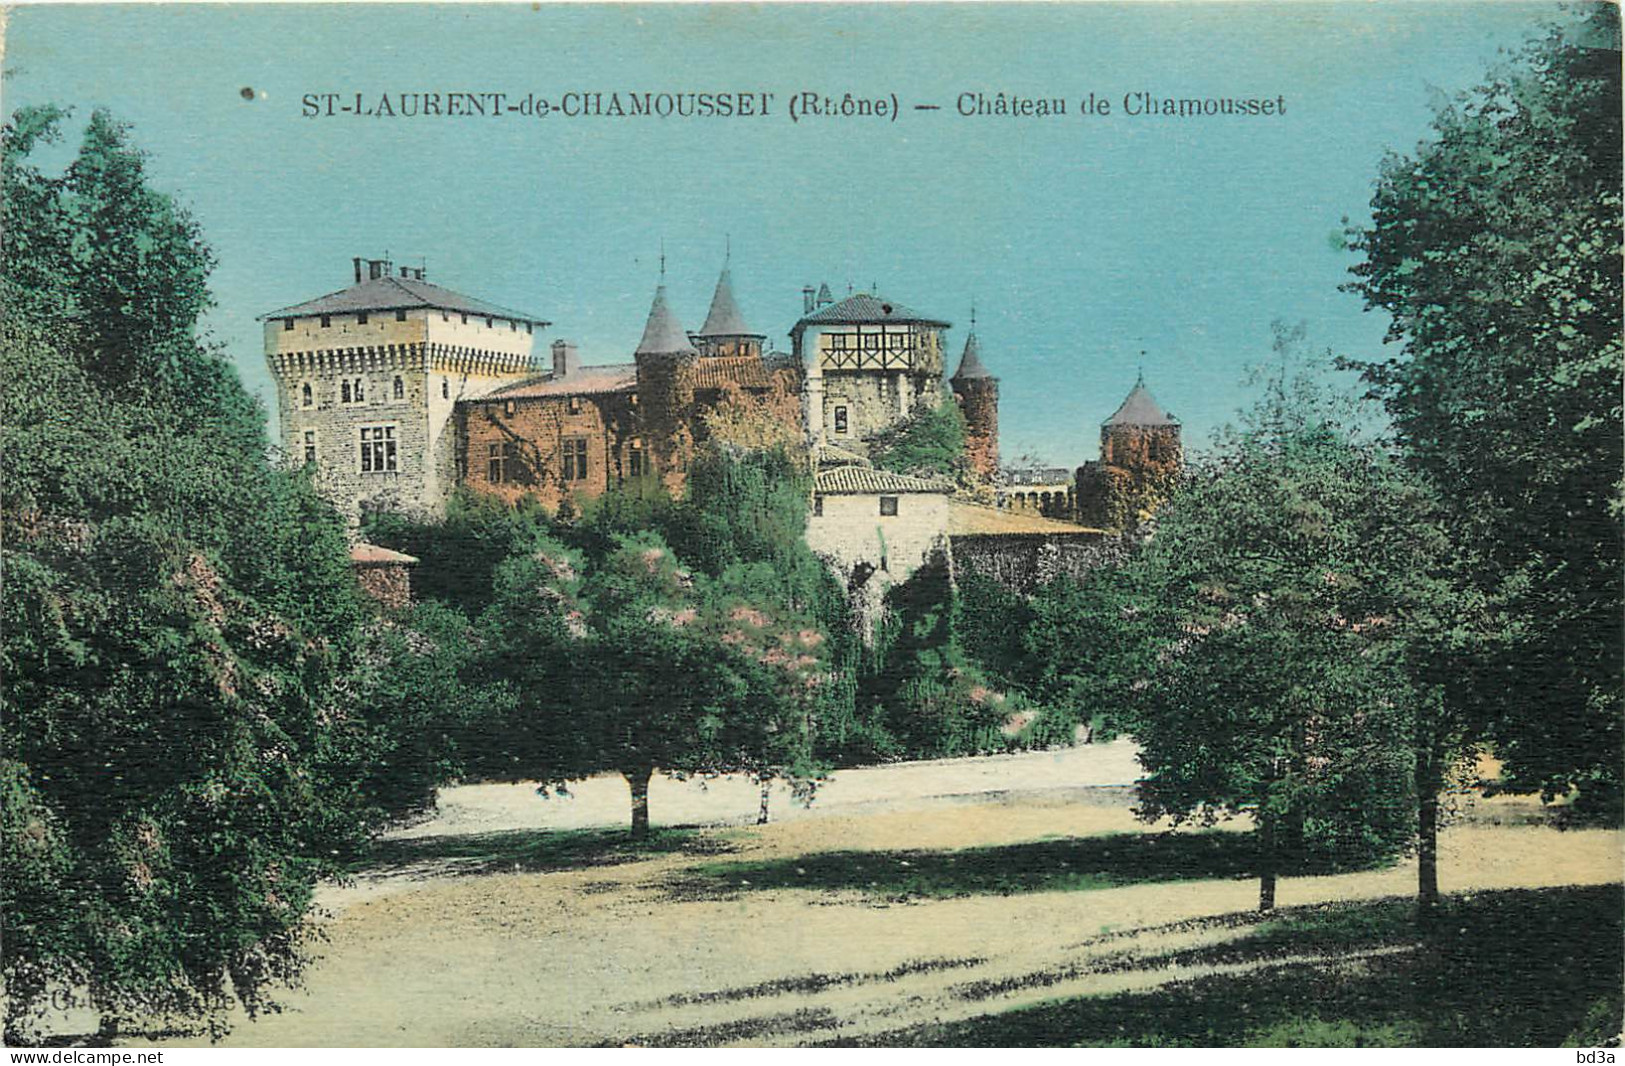  69 - SAINT LAURENT DE CHAMOUSSET - CHATEAU DE CHAMOUSSET - Saint-Laurent-de-Chamousset